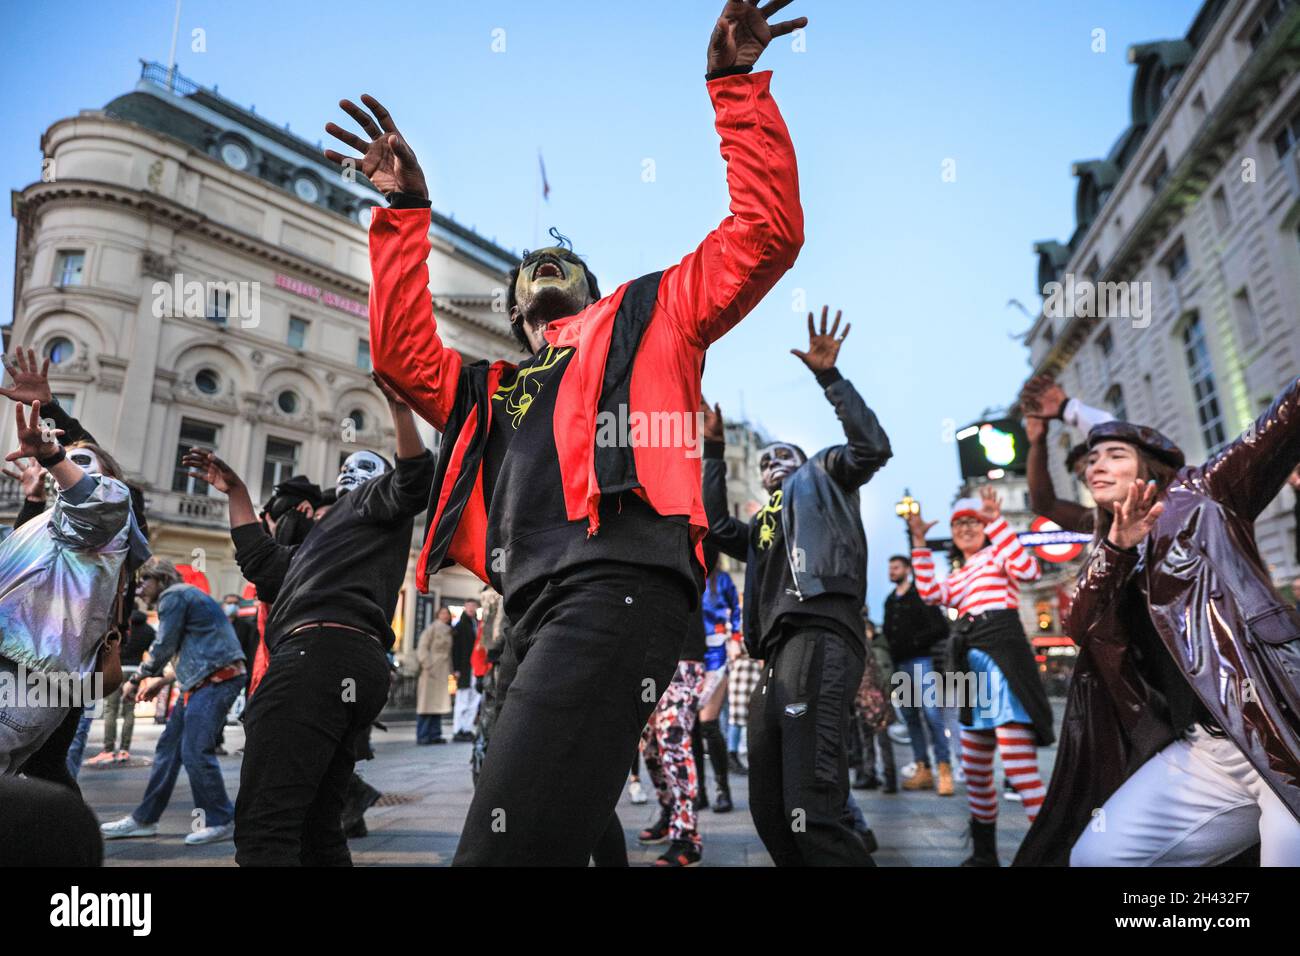 Piccadilly Circus, Londres, Royaume-Uni.31 octobre 2021.Les danseurs recréent les célèbres scènes de danse zombie issues de la vidéo « Thriller » de Michael Jackson.Les fêtards prennent part à une fête de danse d'Halloween, comprenant un groupe de Locals.org, une plate-forme sociale basée à Londres, et se rencontrent pour réunir les Londoniens.Les passants sont encouragés à se joindre à eux et à danser.Credit: Imagetraceur/Alamy Live News Banque D'Images